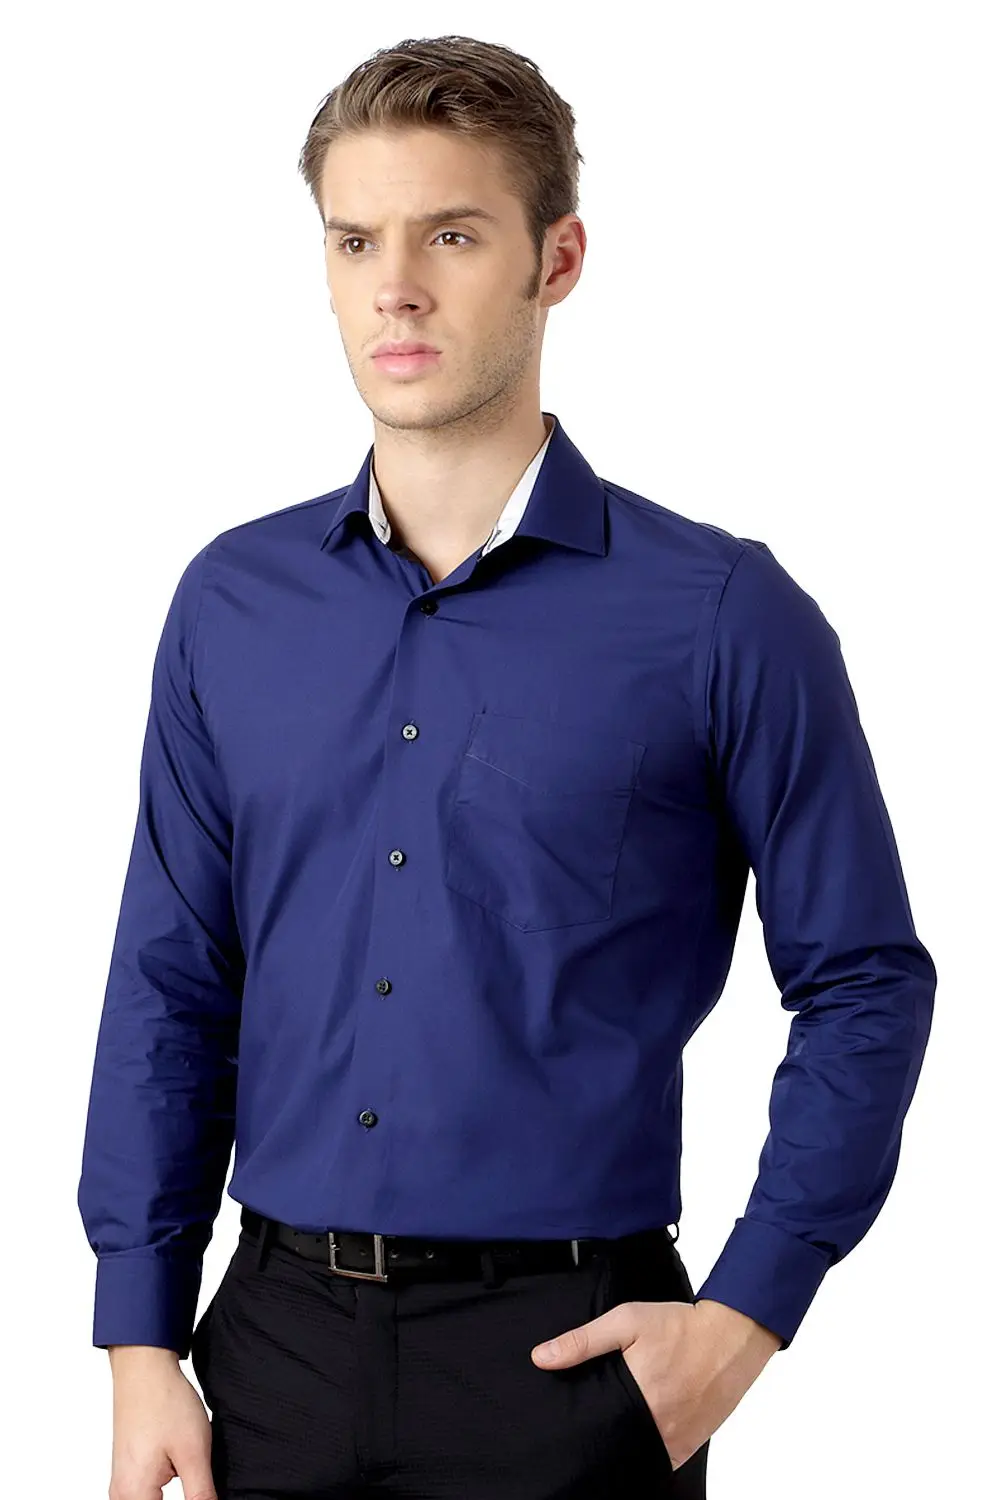 Concesión Biblia entregar Los Hombres 2014 Nuevo Diseño De Moda Camisa De Vestir - Buy Moda Camisa De  Vestir Product on Alibaba.com